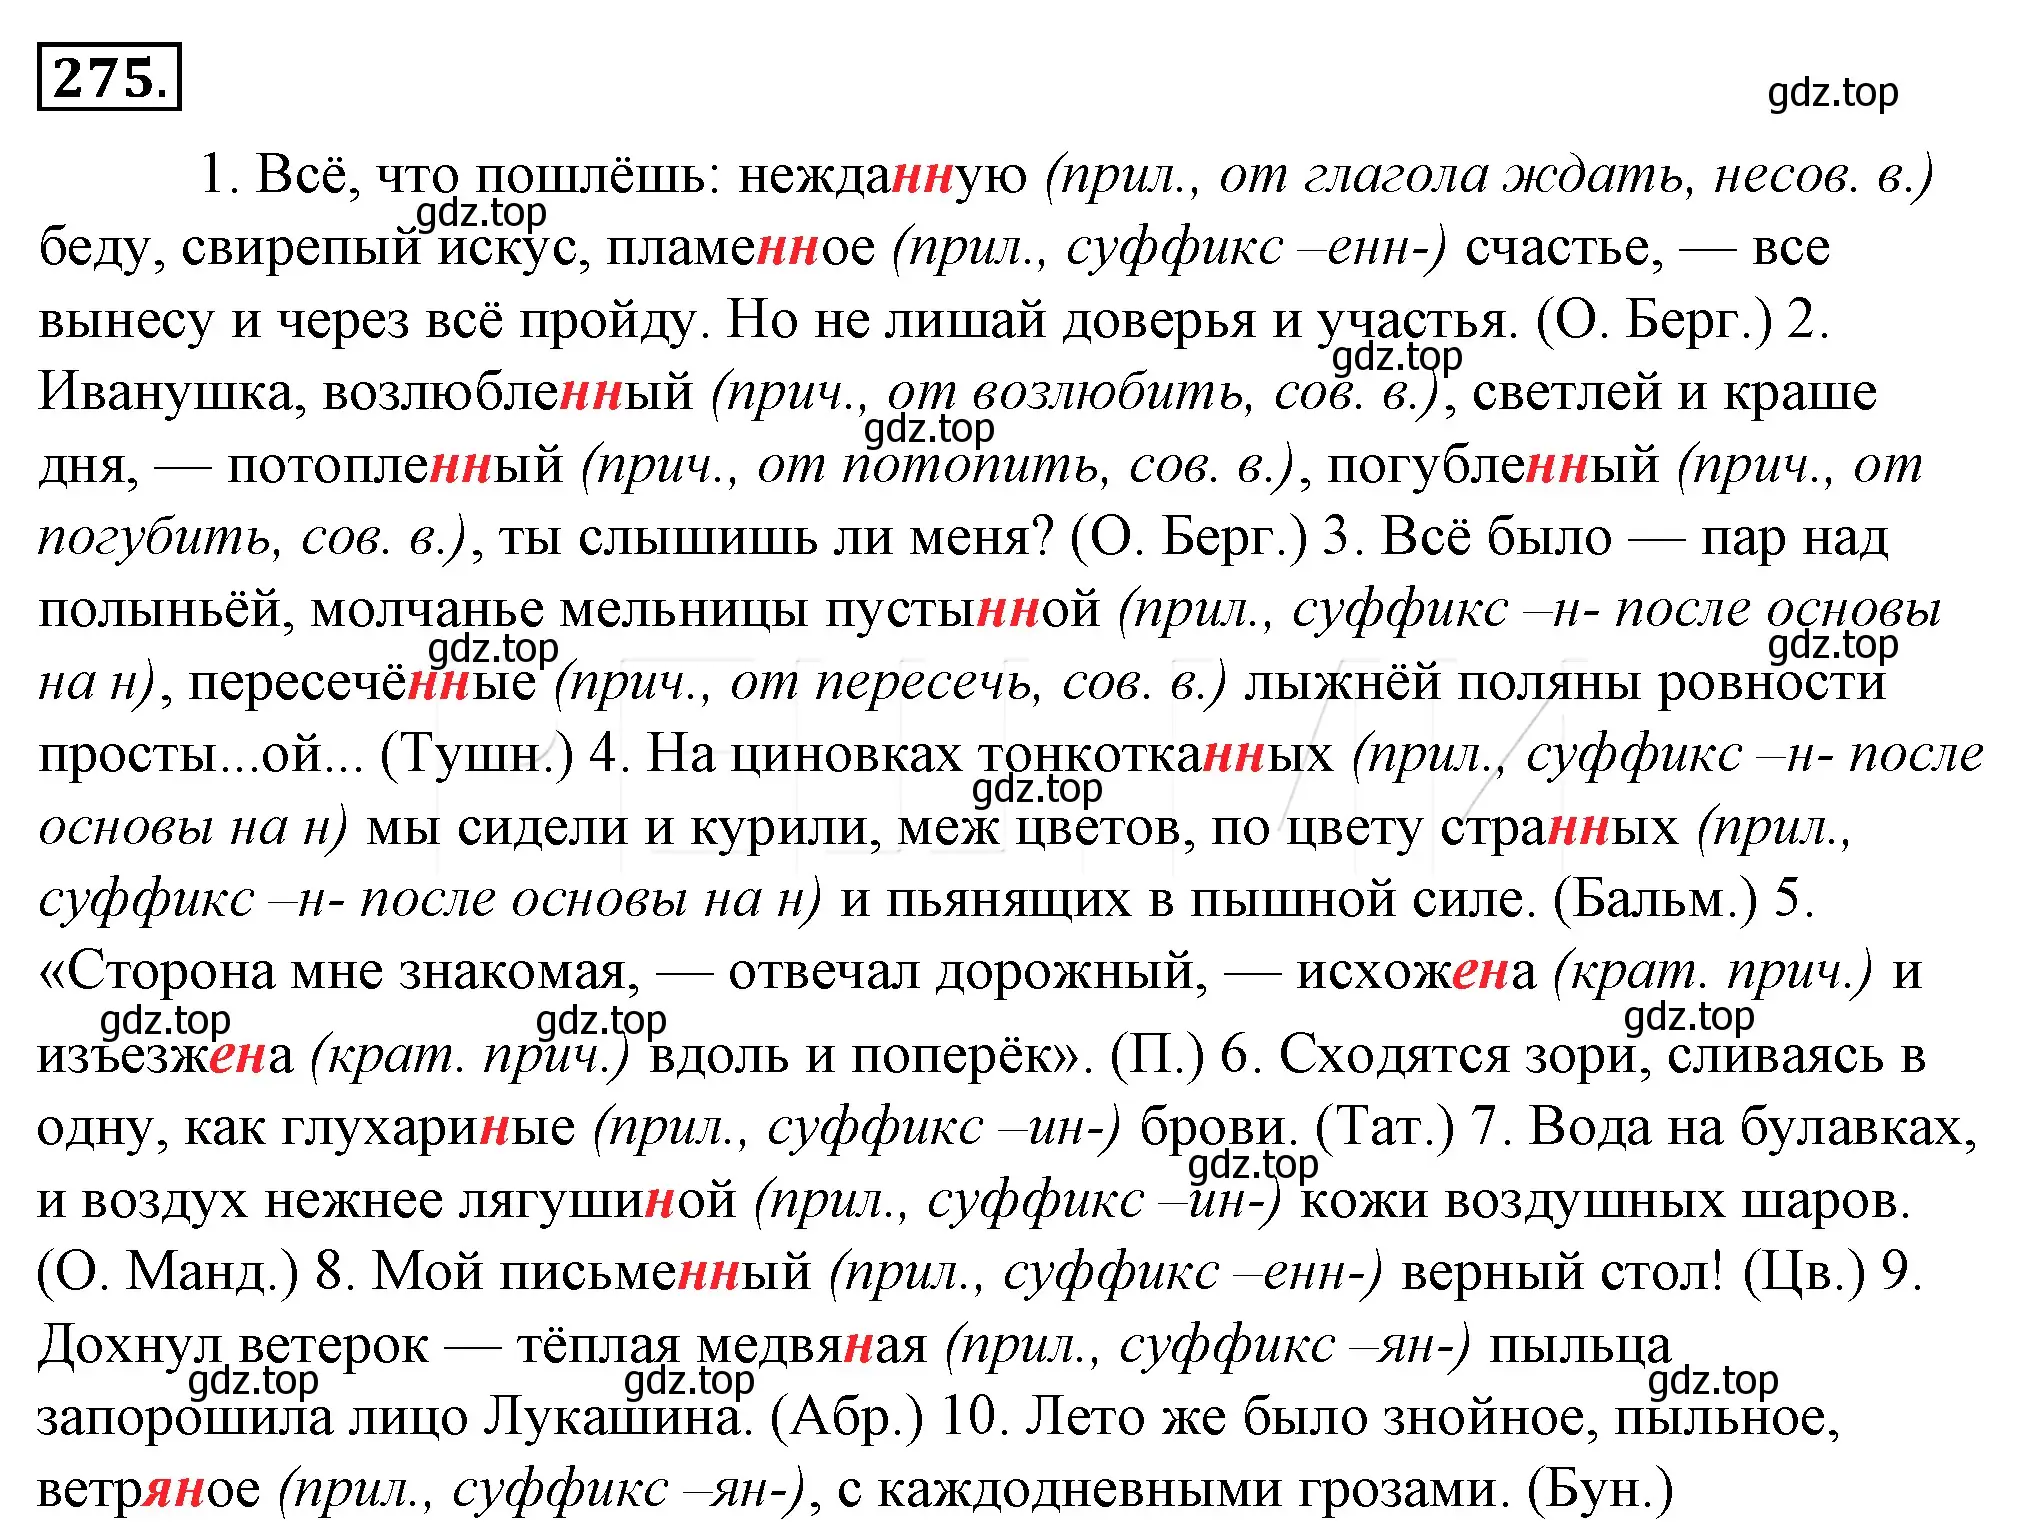 Решение 4. номер 299 (страница 276) гдз по русскому языку 10-11 класс Гольцова, Шамшин, учебник 1 часть